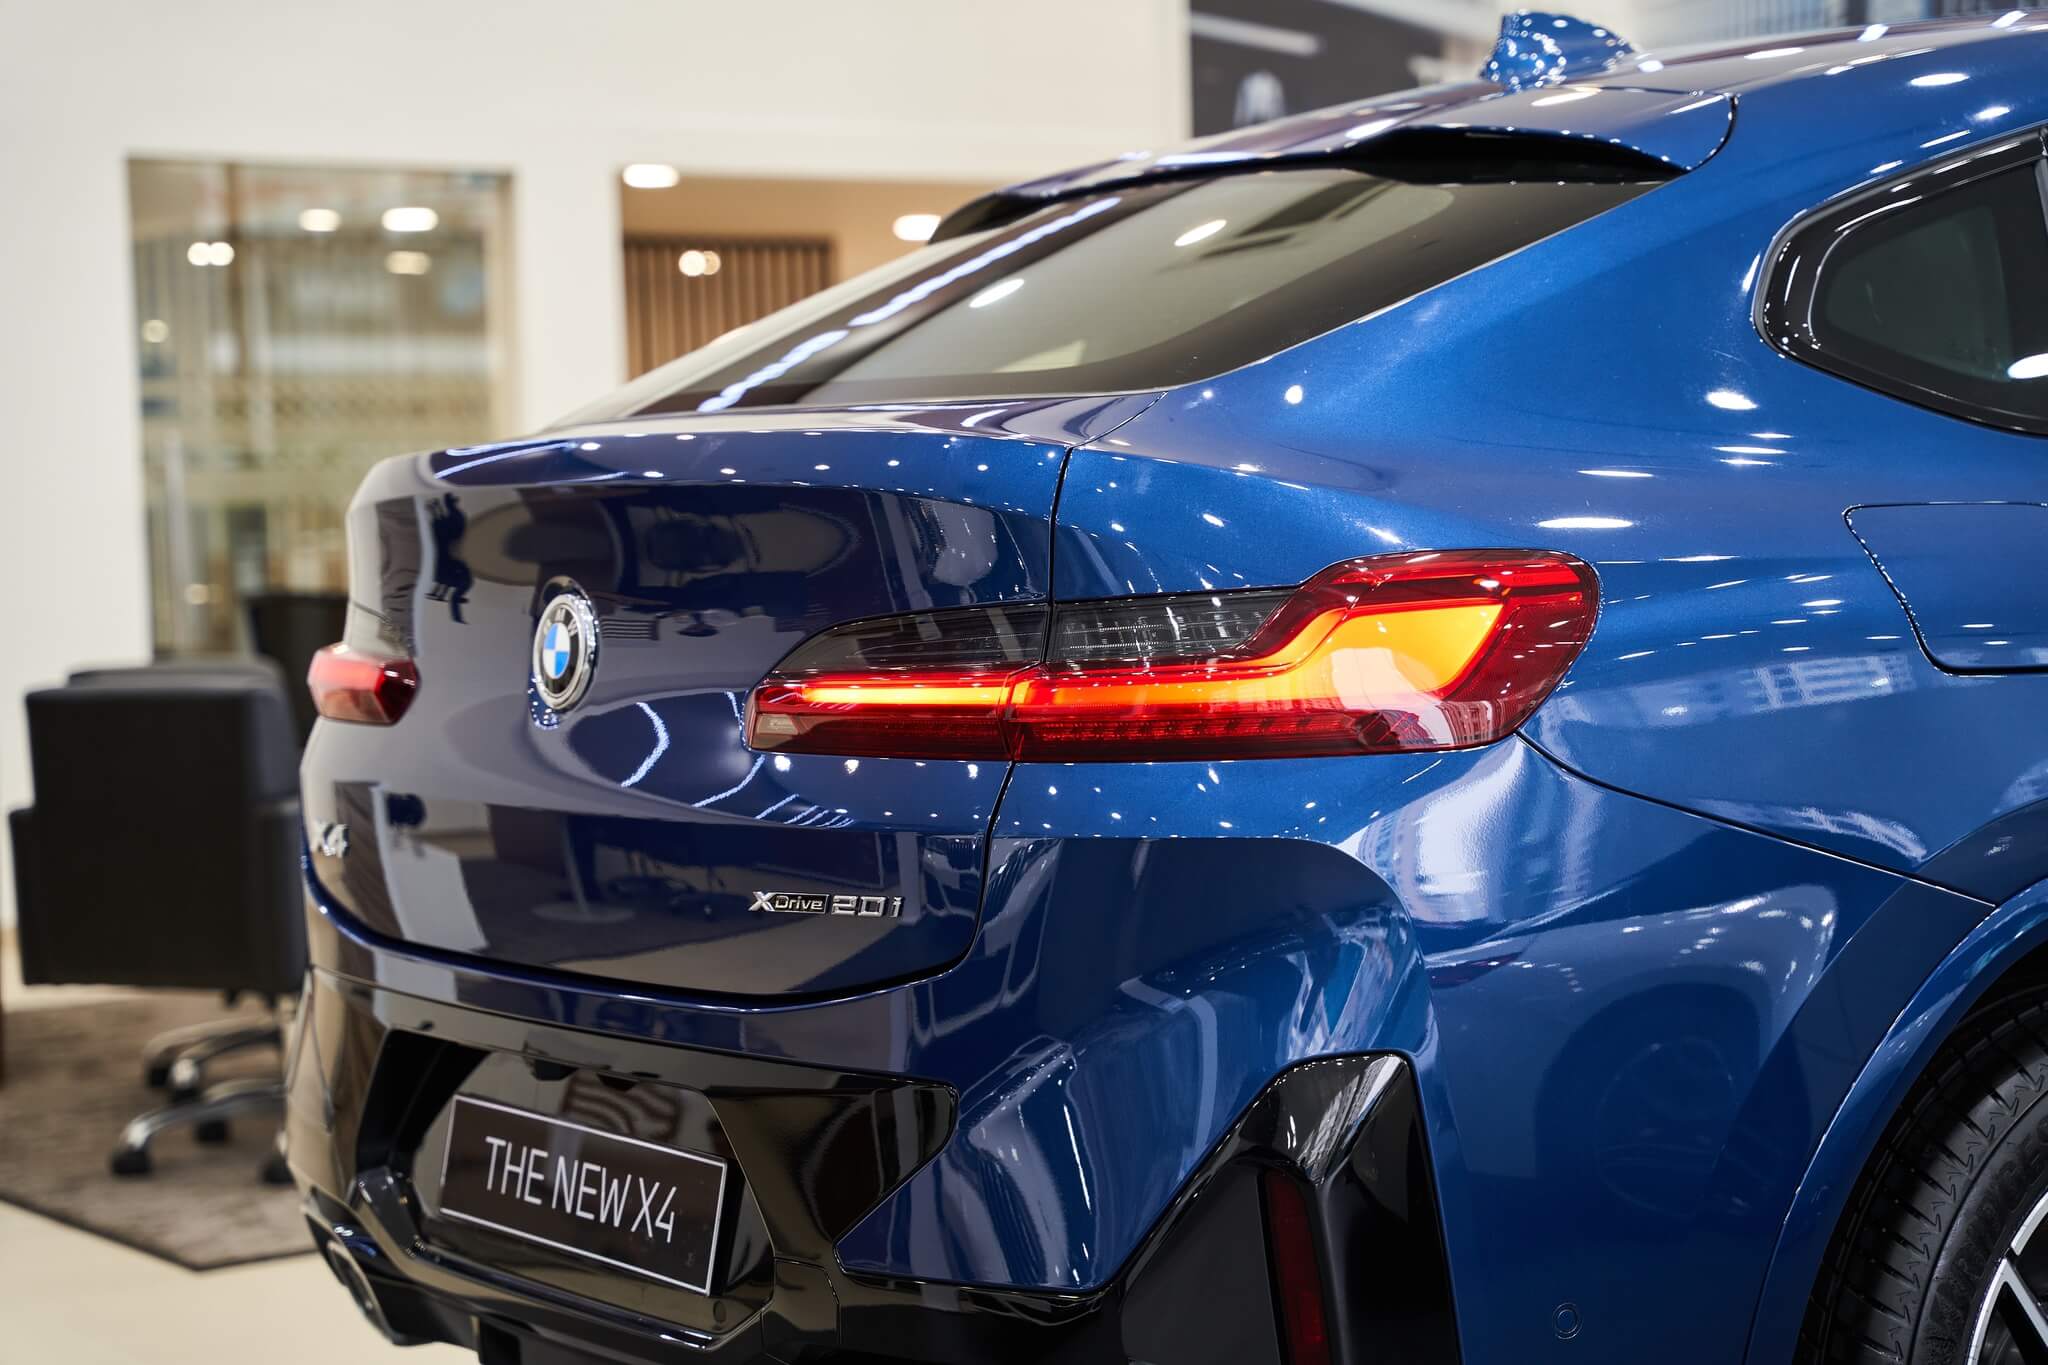 Tải ảnh BMW X4 đẹp miễn phí chất lượng cao 37